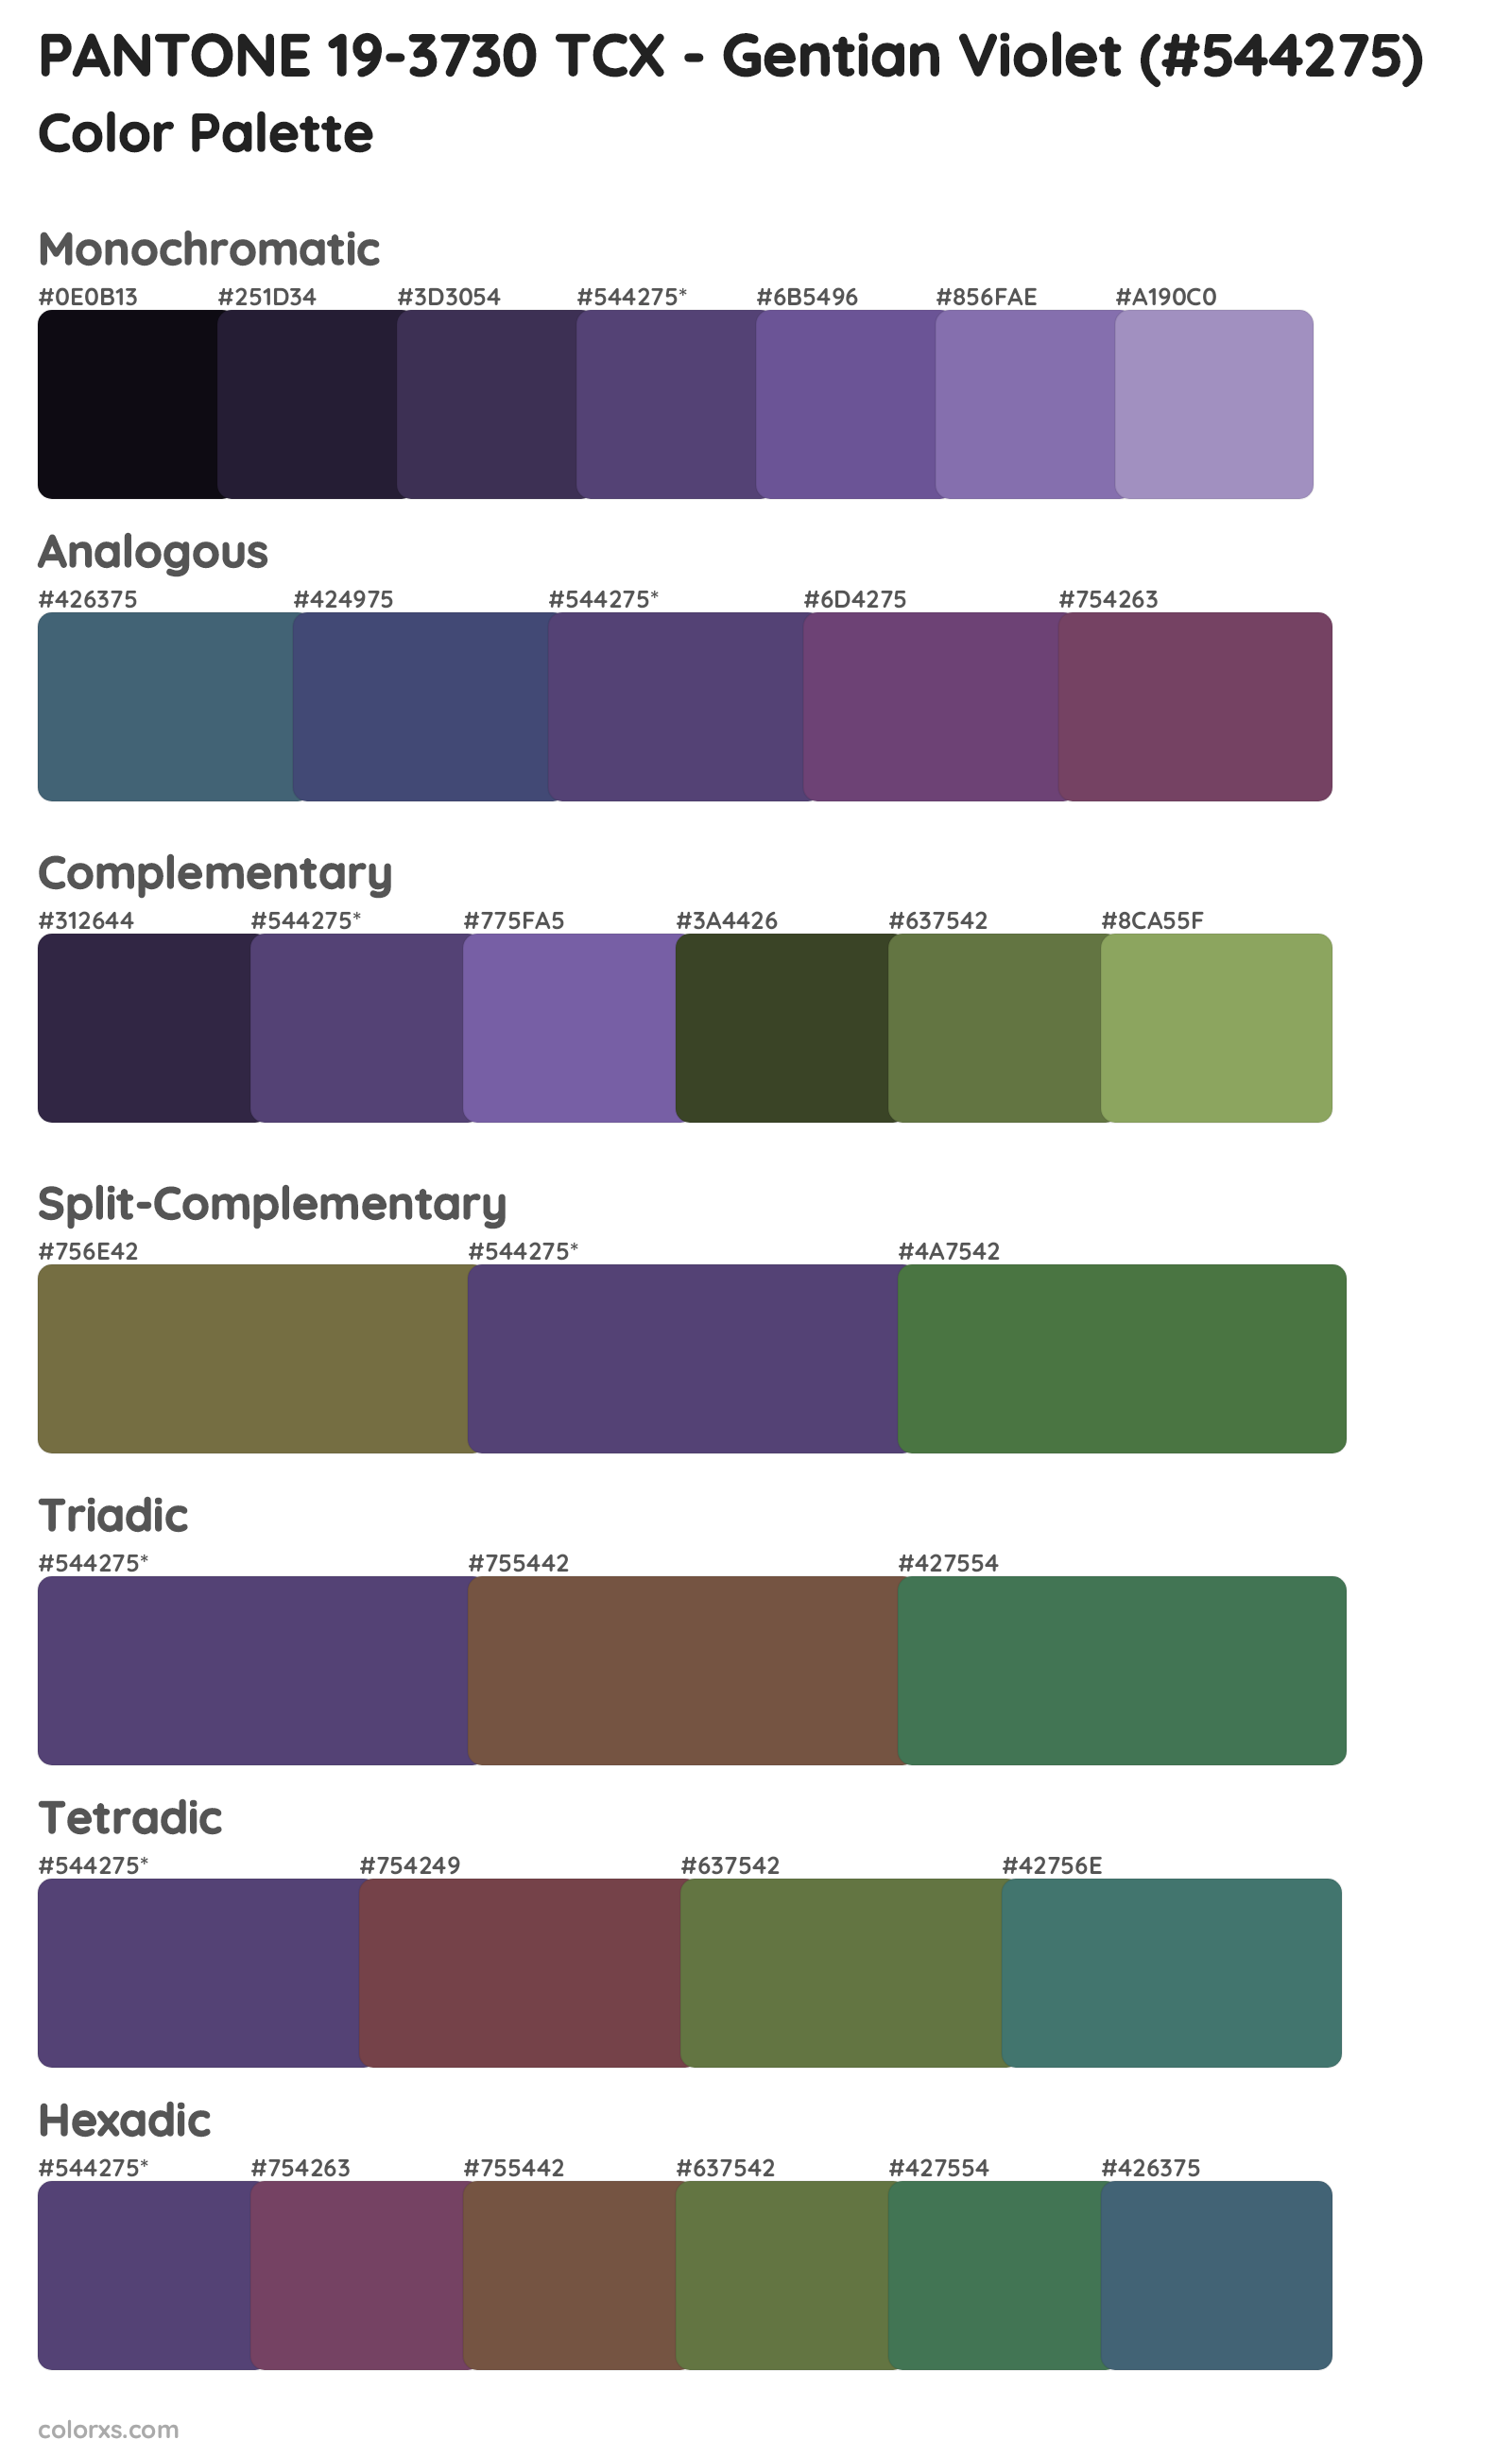 PANTONE 19-3730 TCX - Gentian Violet Color Scheme Palettes